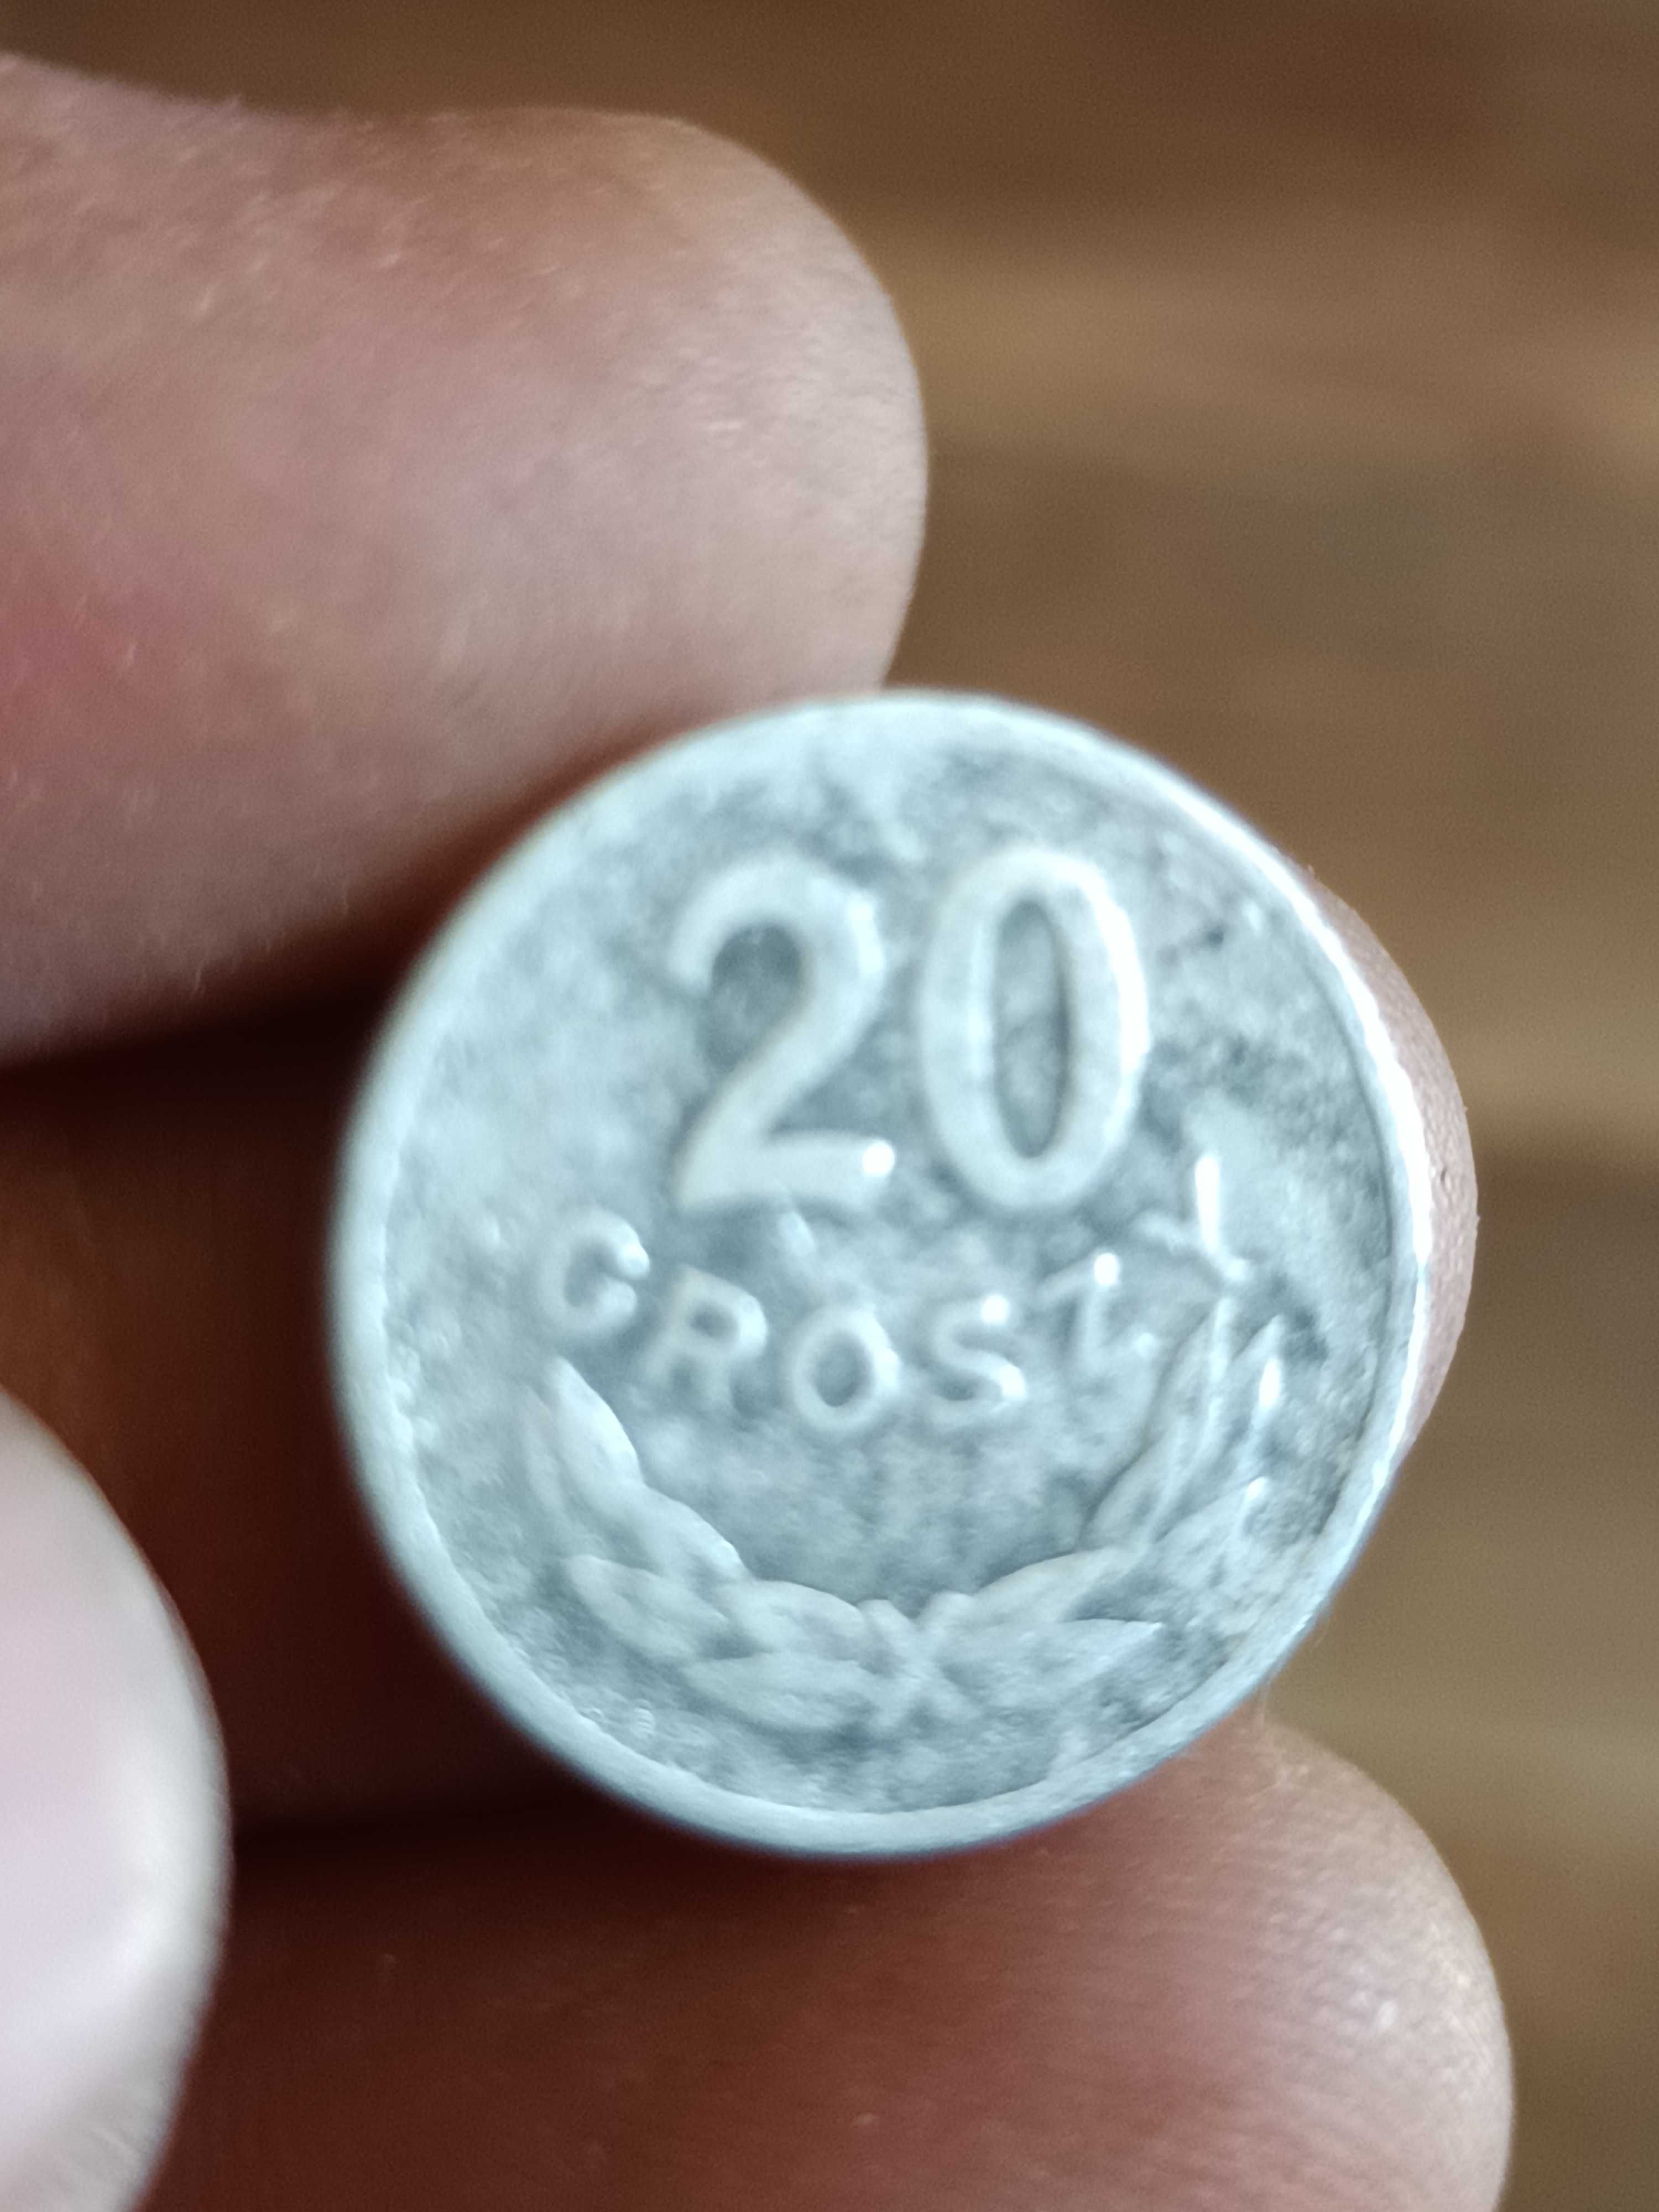 Sprzedam monetę 20 groszy 1949 rok